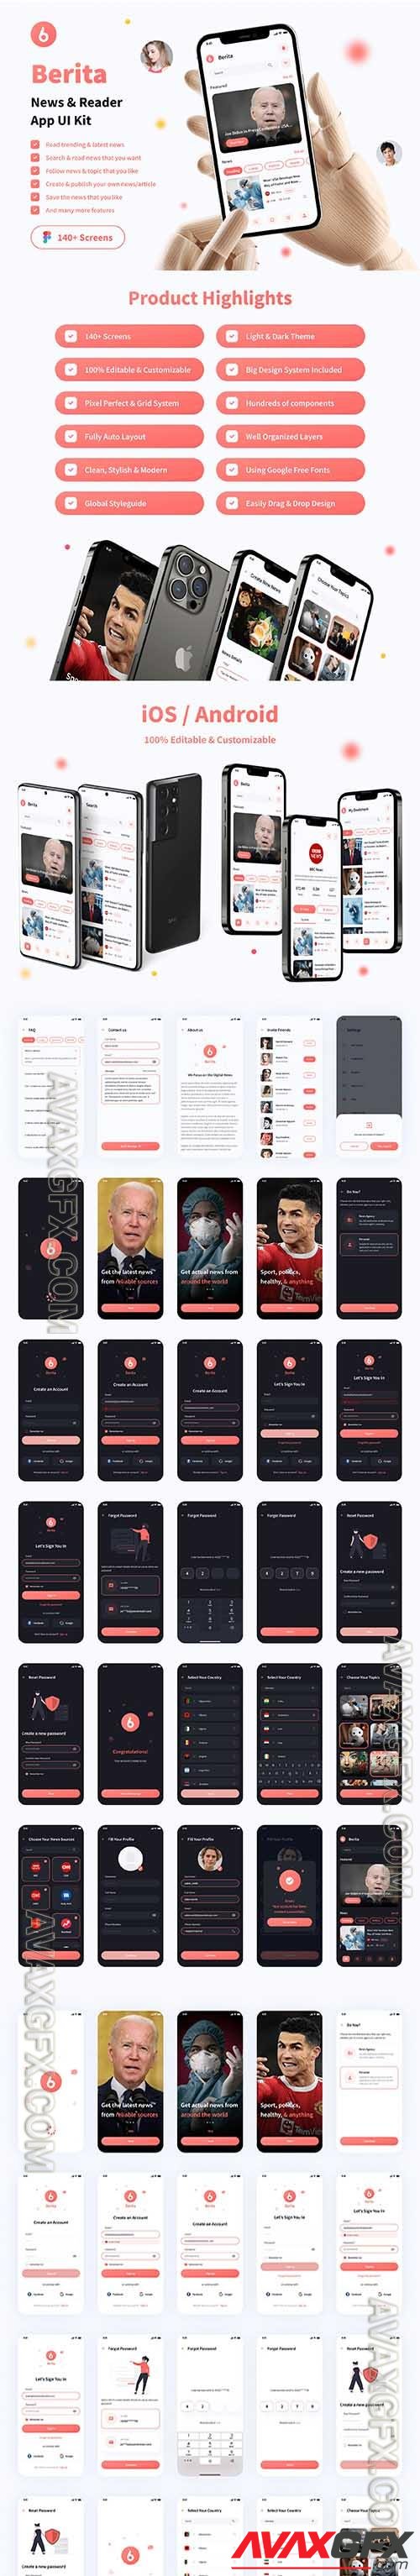 Berita - News & Reader App UI Kit